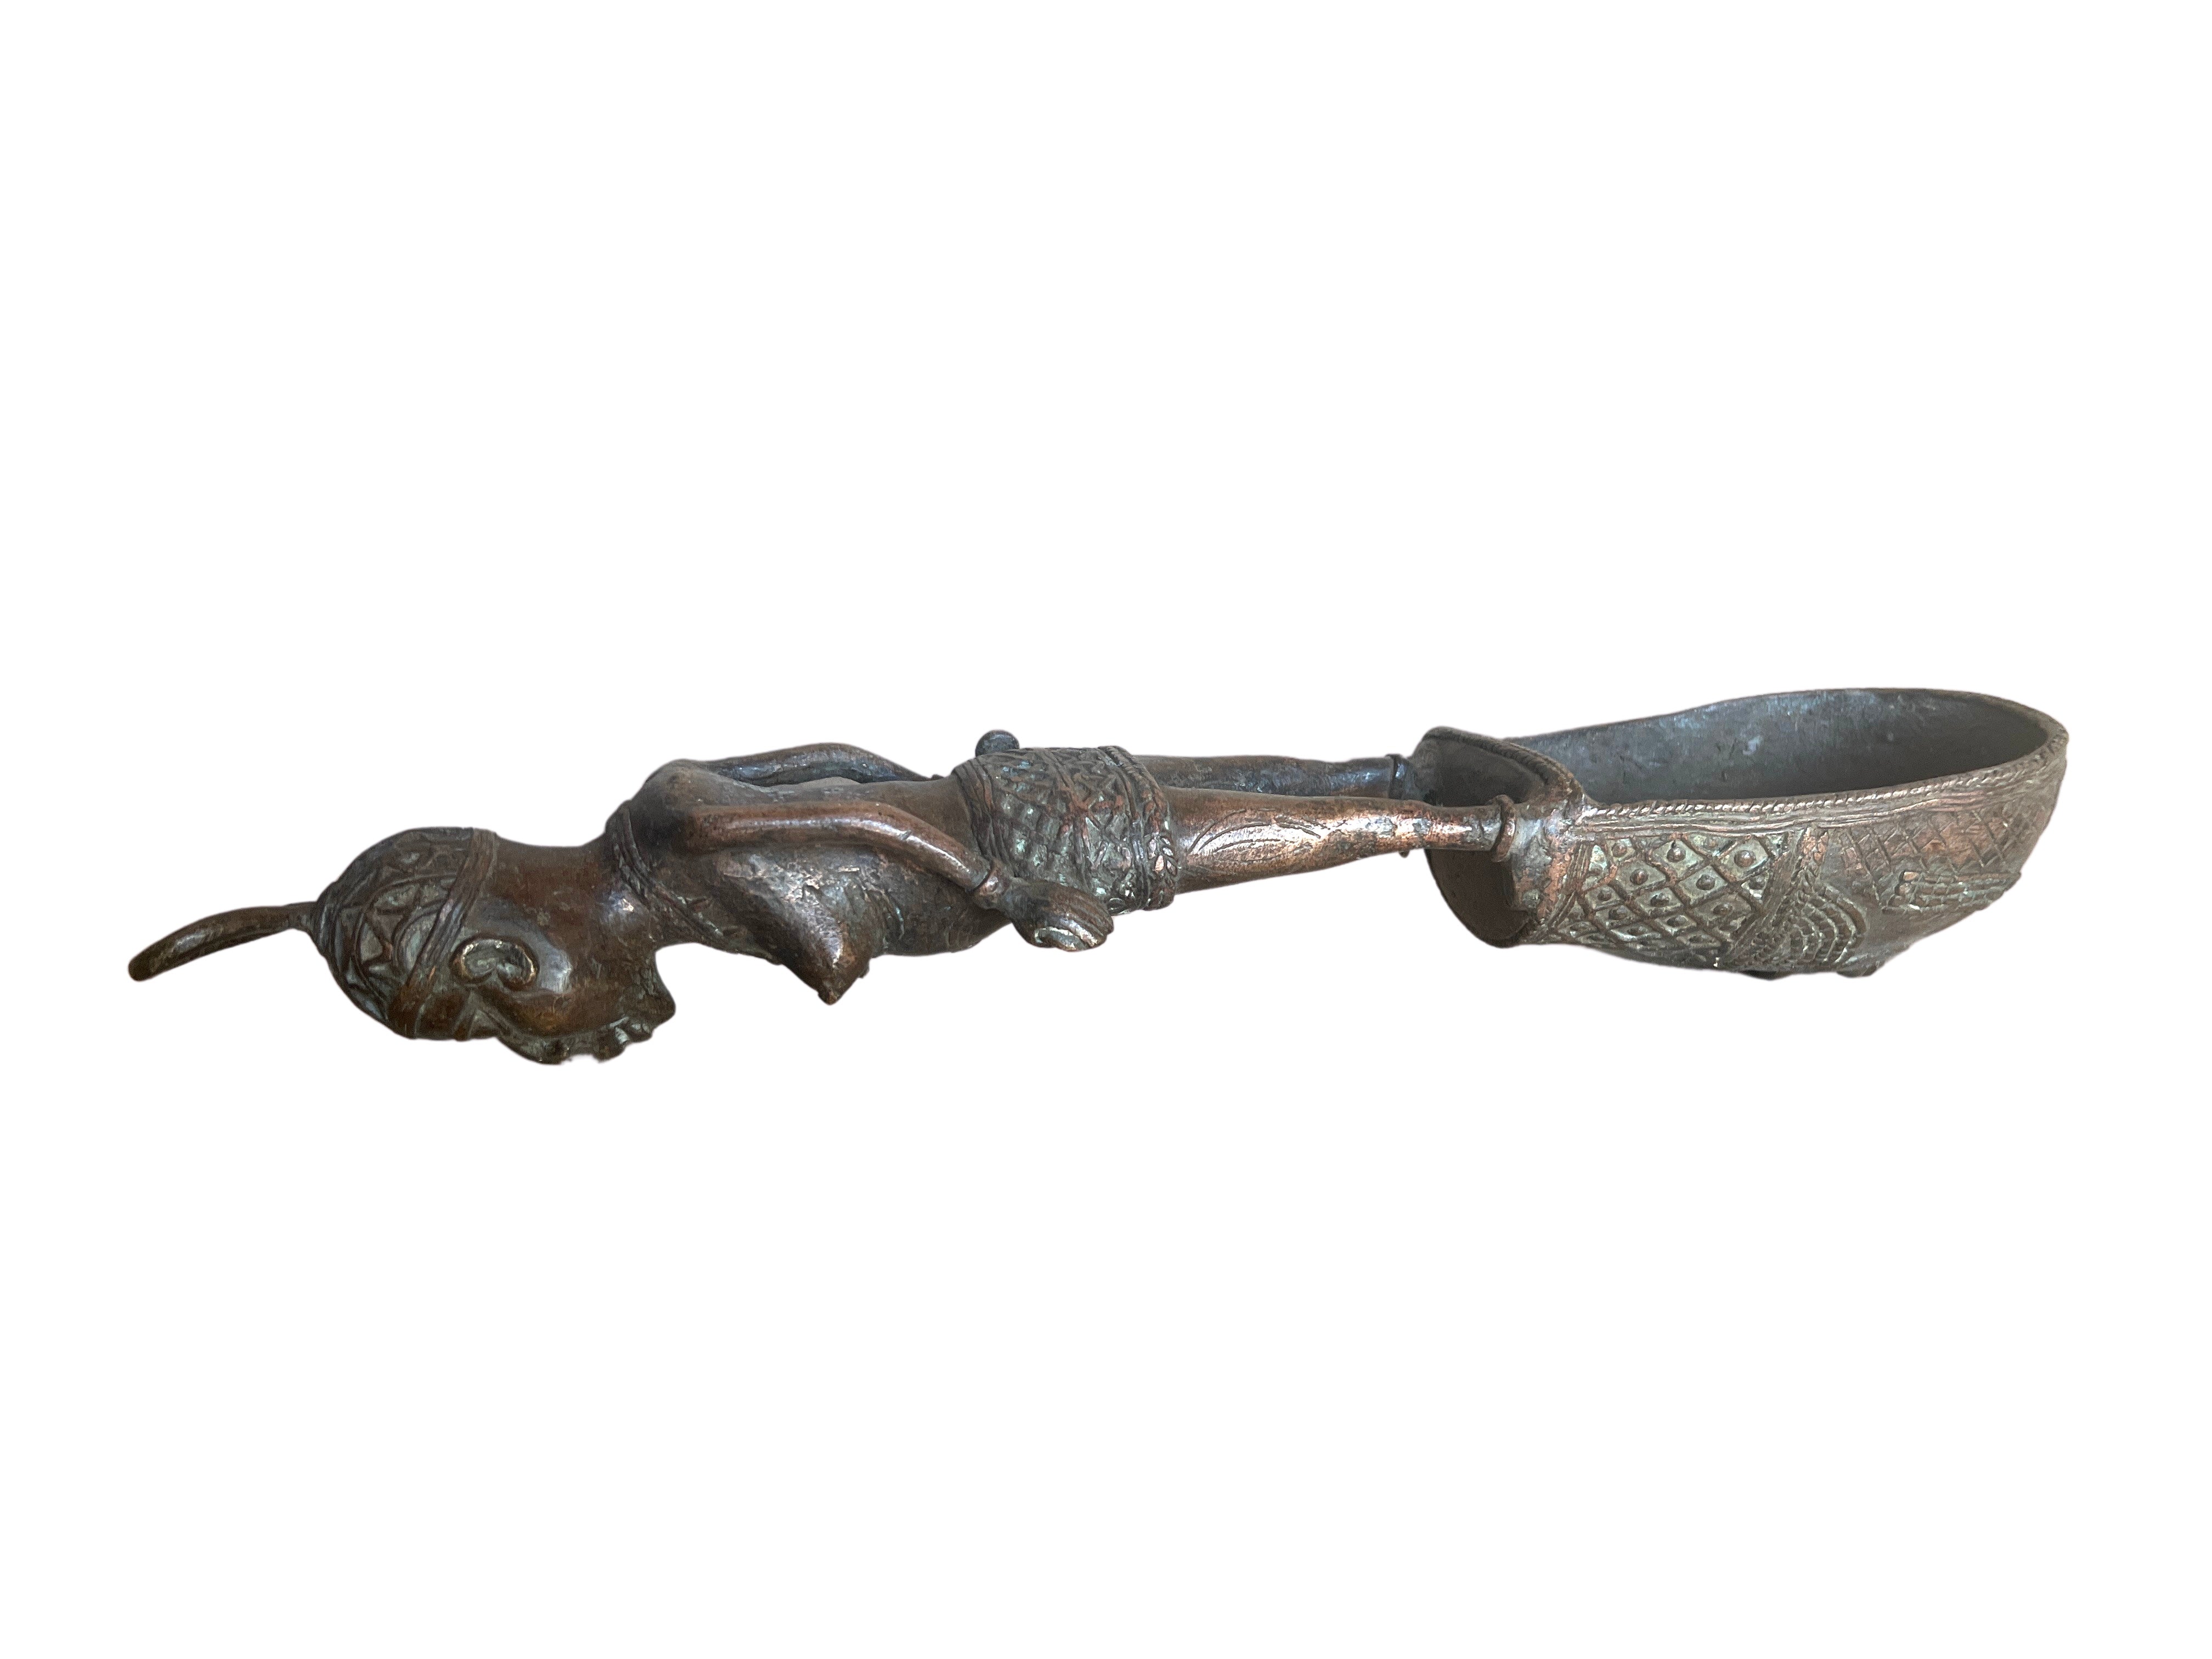 Edo Benin Bronze Spoon - Edo